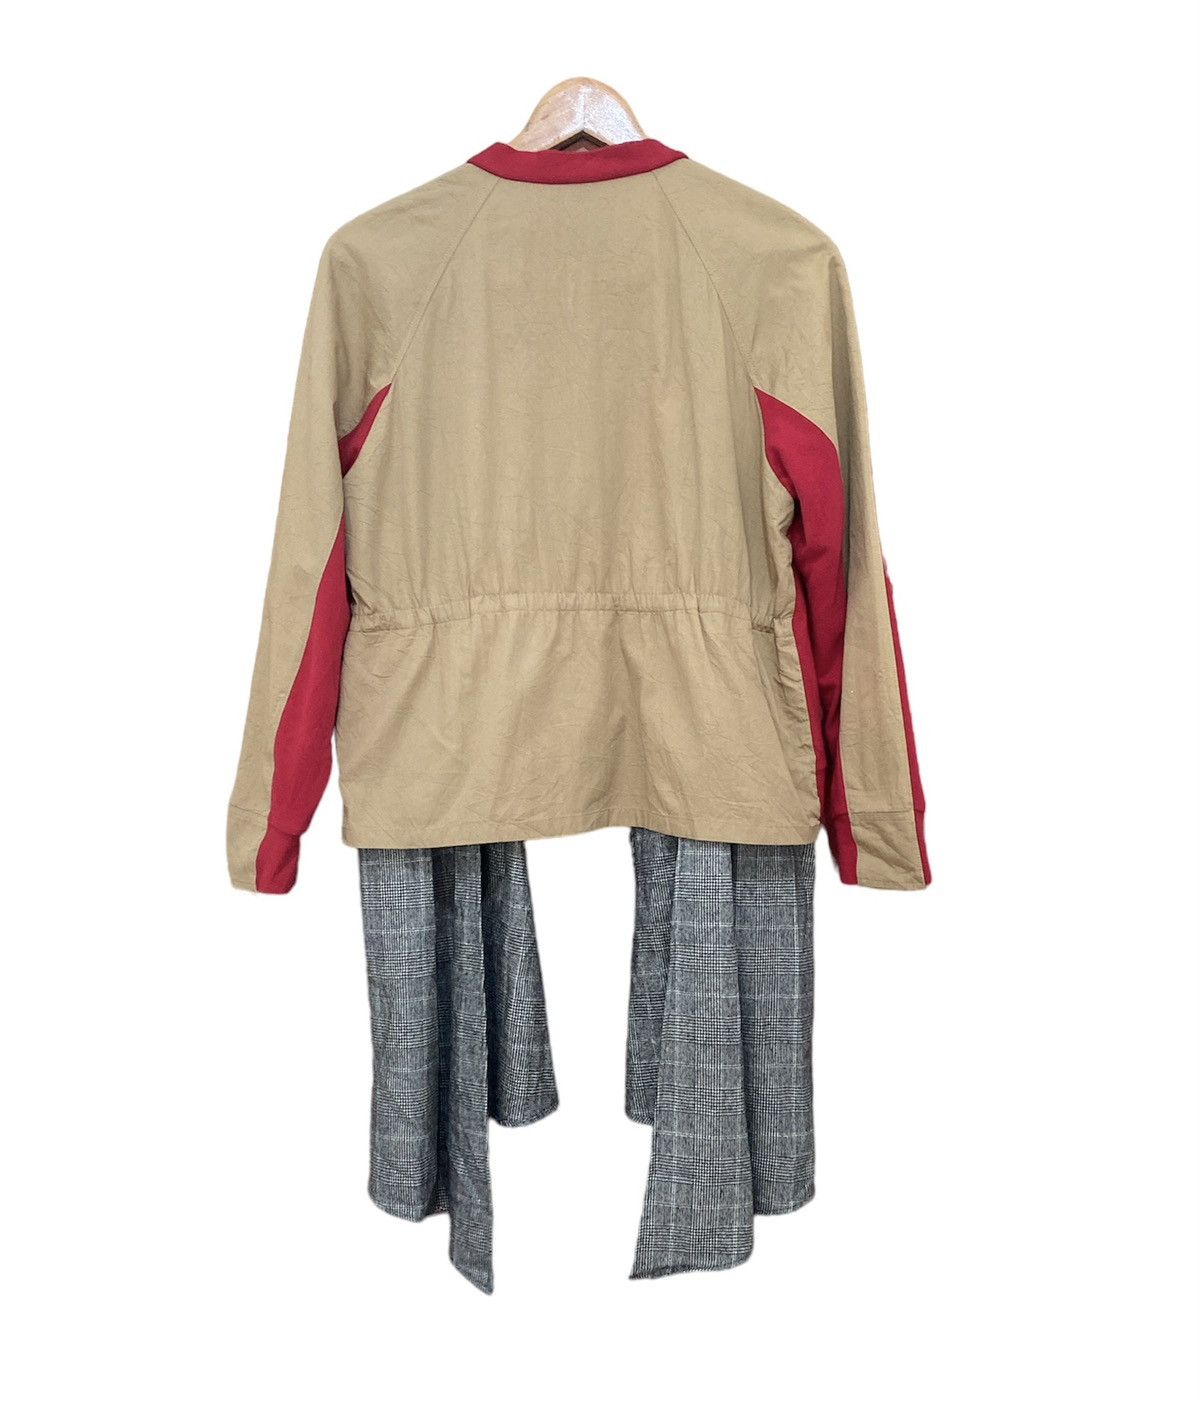 SueUNDERCOVER AW18 Cardigan Style Jacket - 3